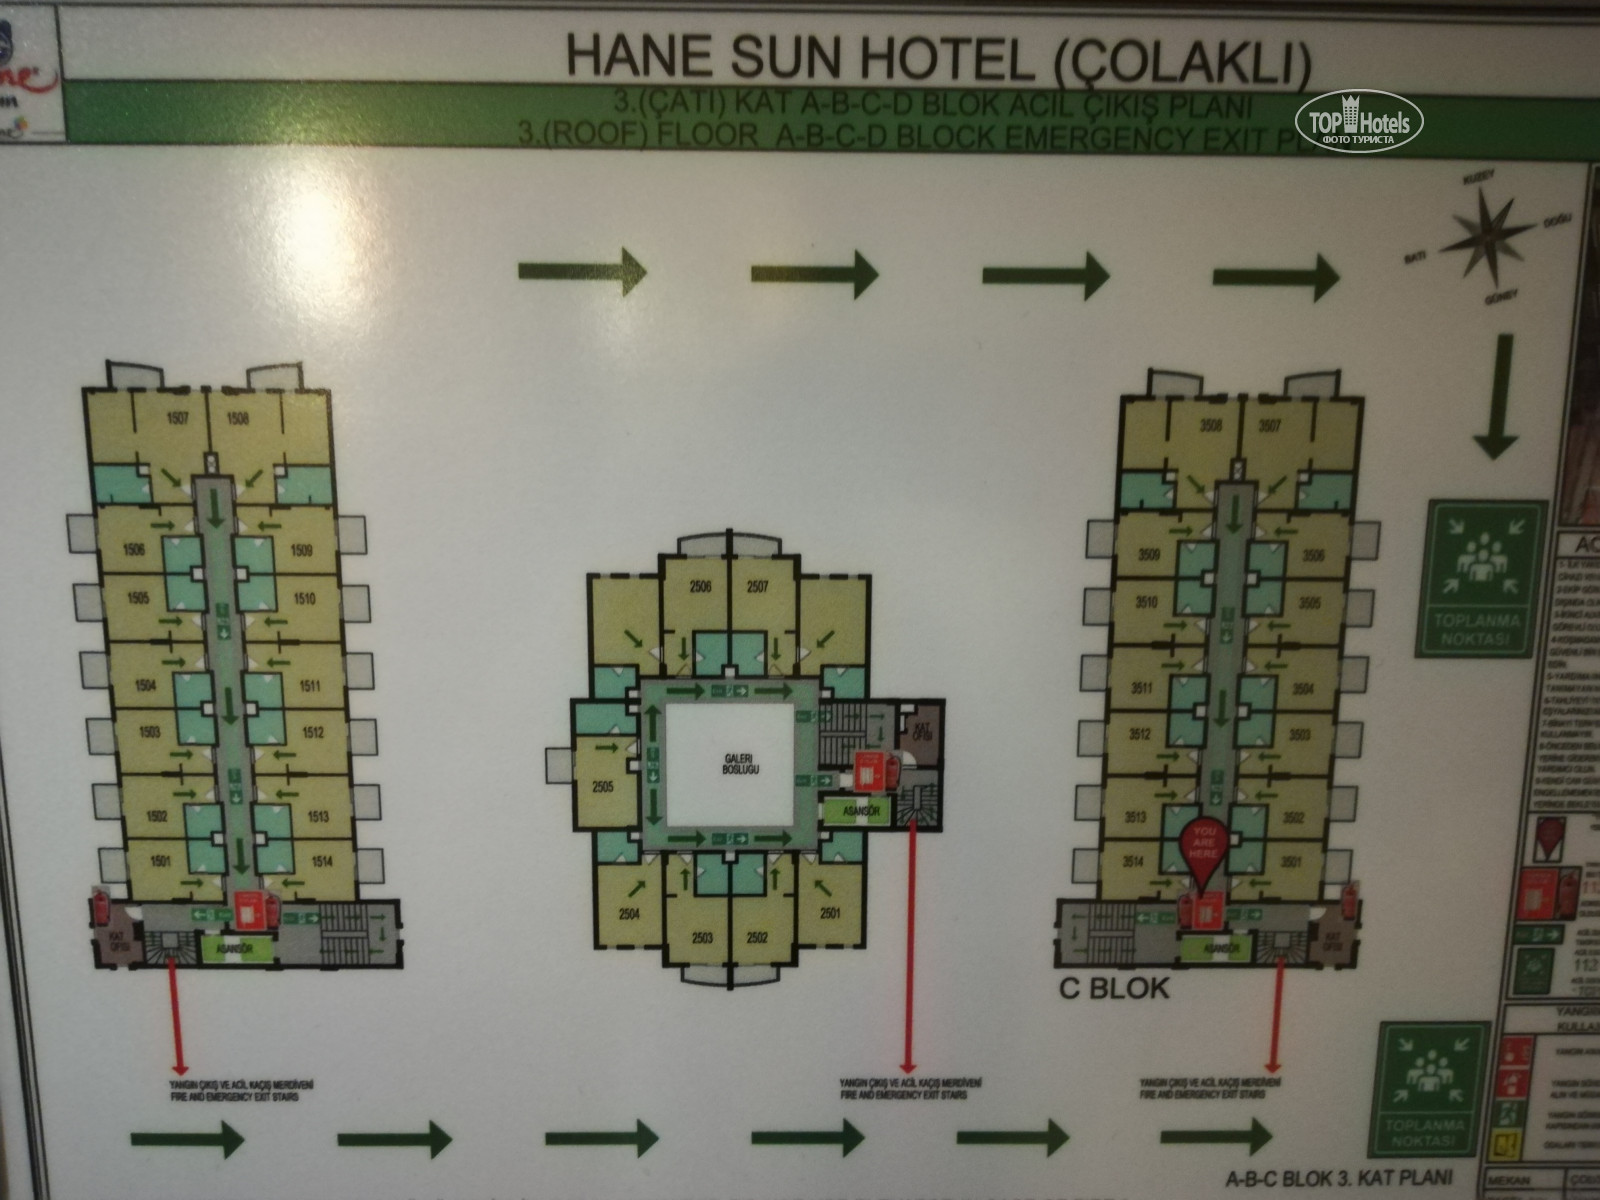 Фан смарт хане. Отель Hane Sun Elite. Fun&Sun Smart Hane Sun. Hane Sun 5 Турция Сиде. Hane Sun Elite 5* (Colakli).